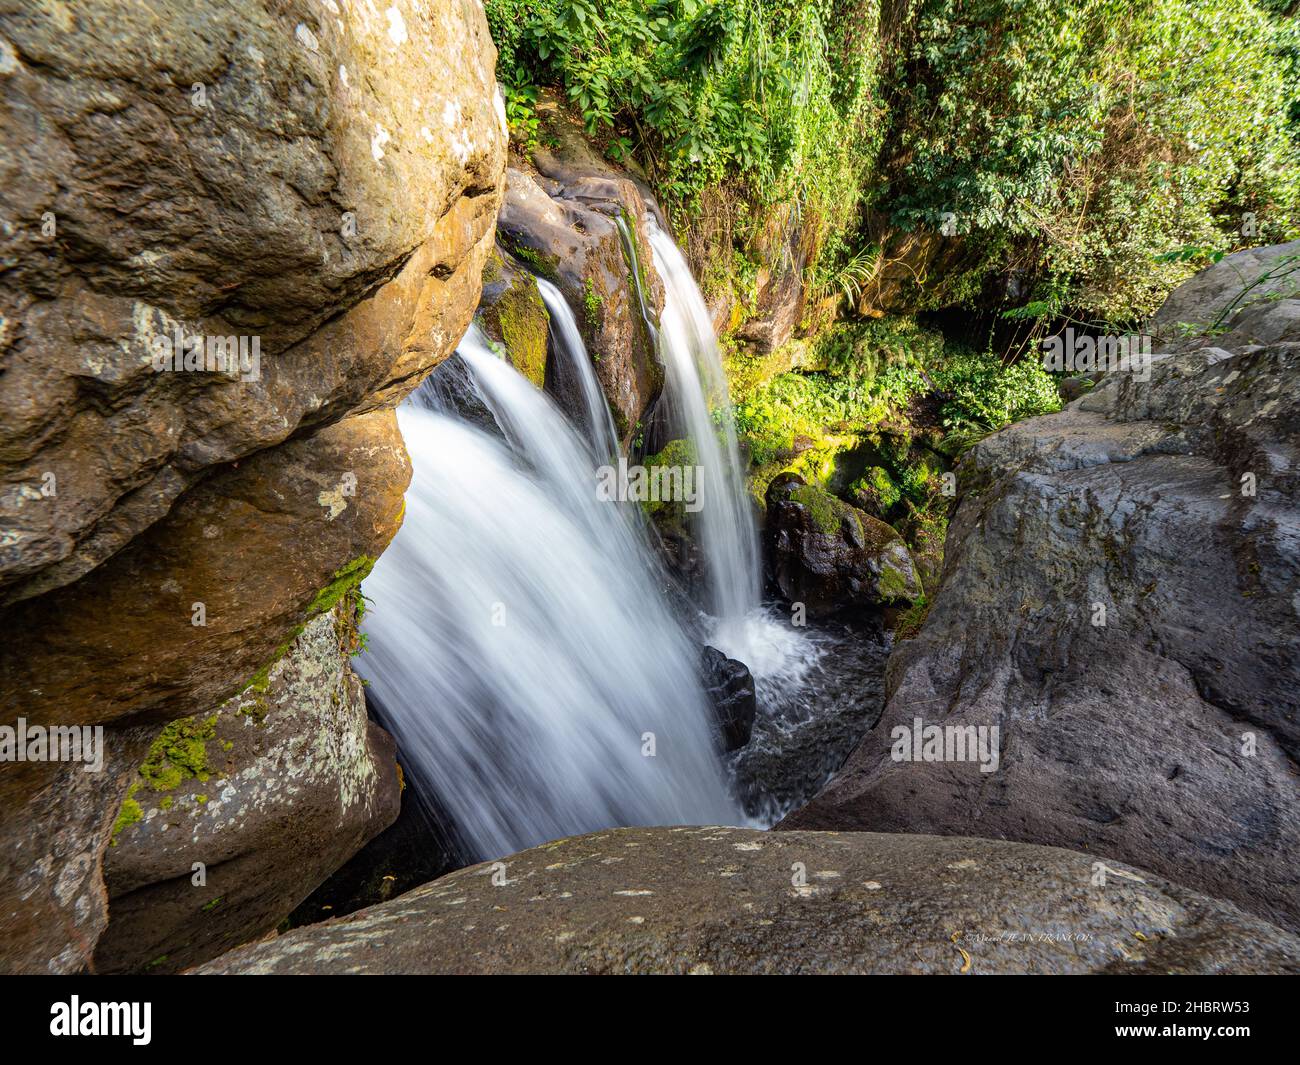 Marangu waterfall in Tanzania Stock Photo